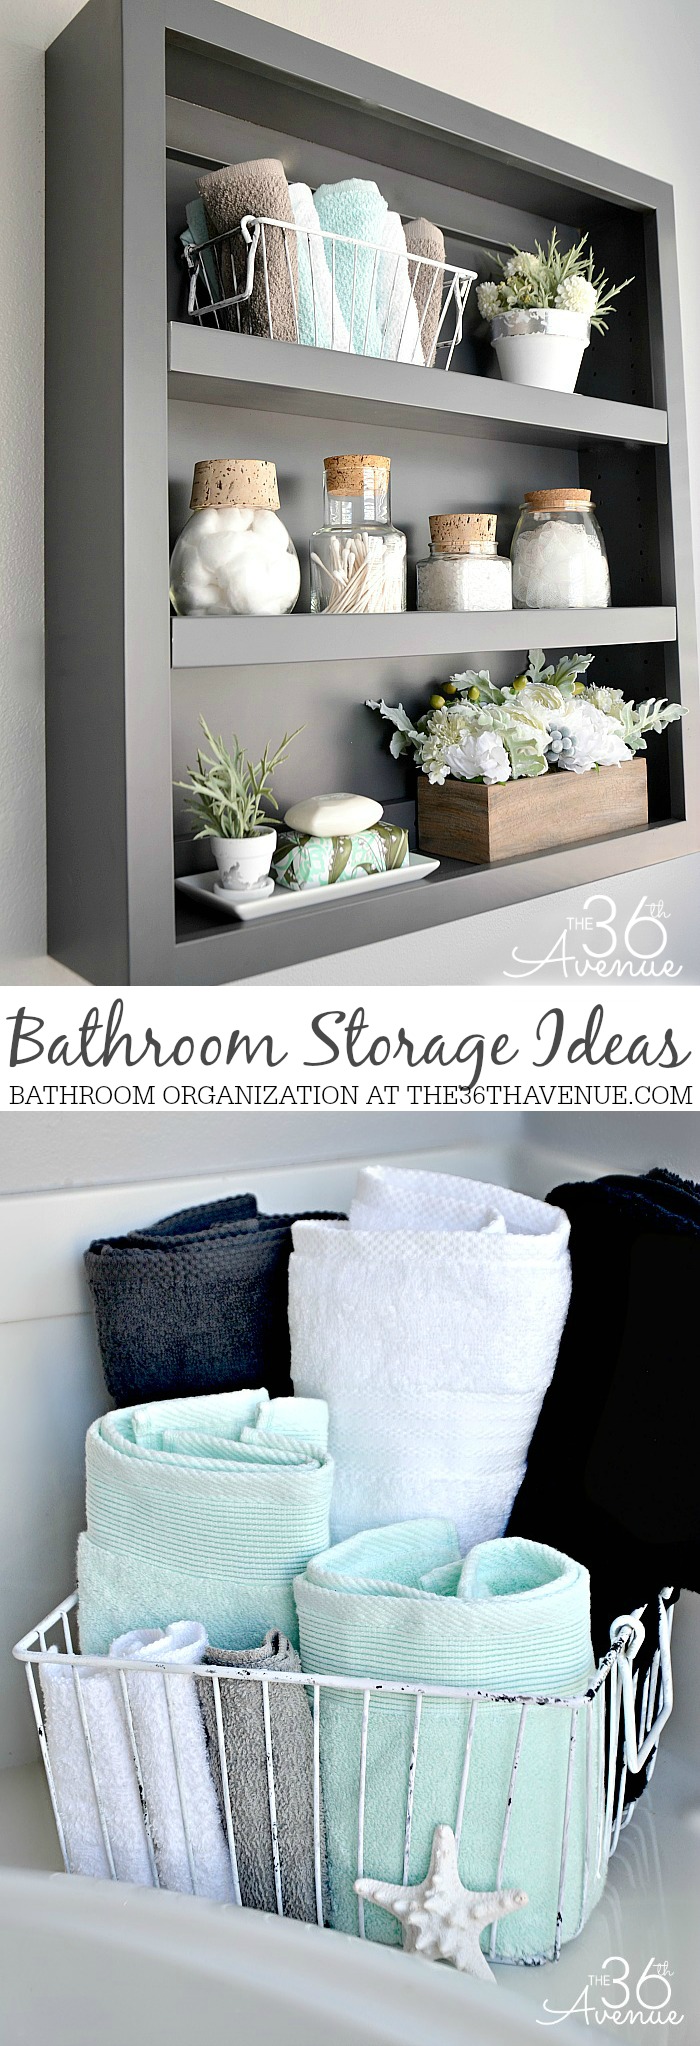 Bathroom Storage Organization Ideas The 36th Avenue